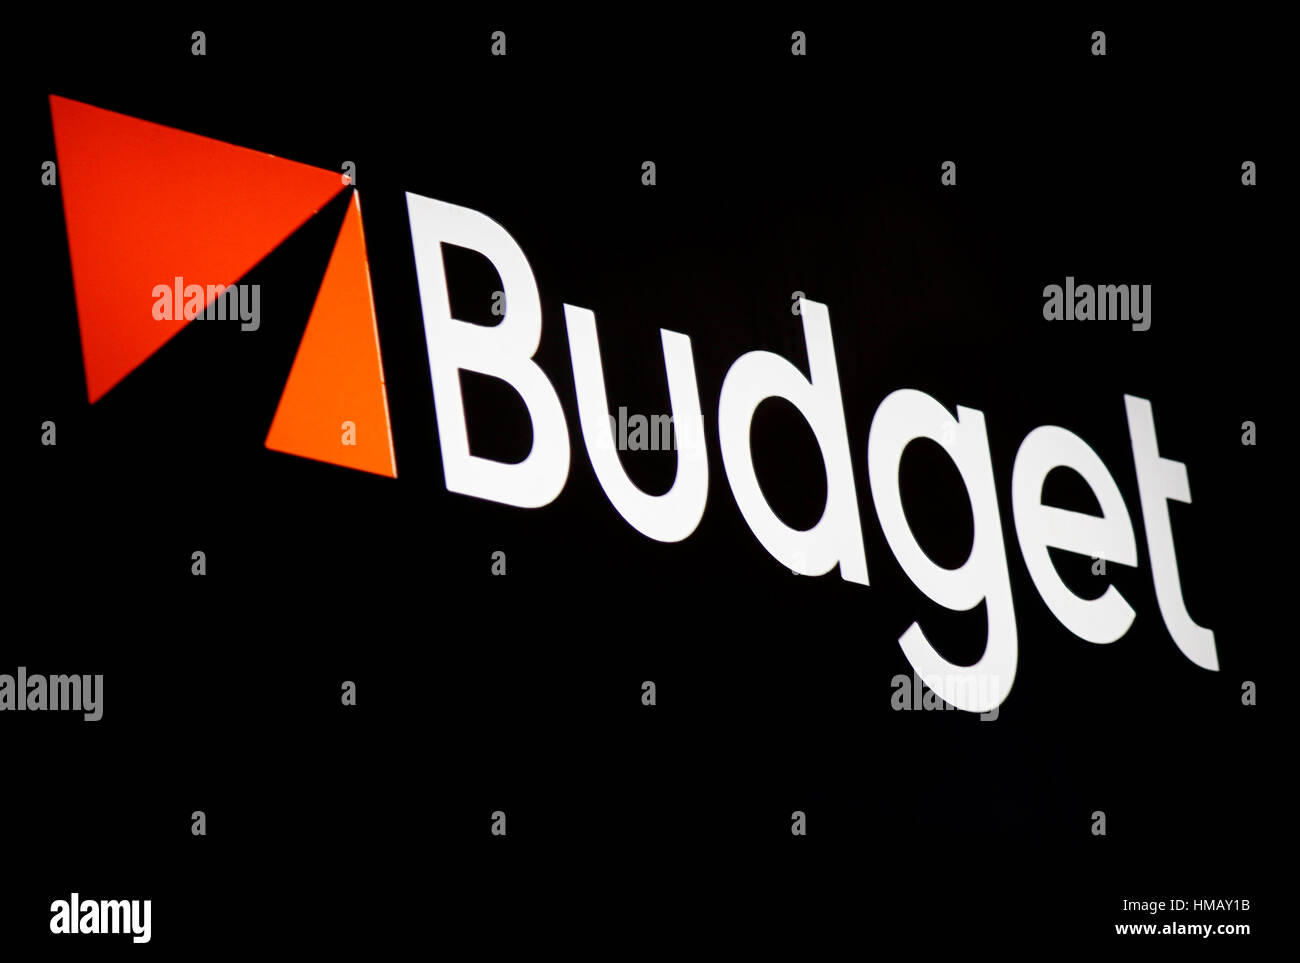 Das Logo der Marke "Budget", Berlin. Stockfoto